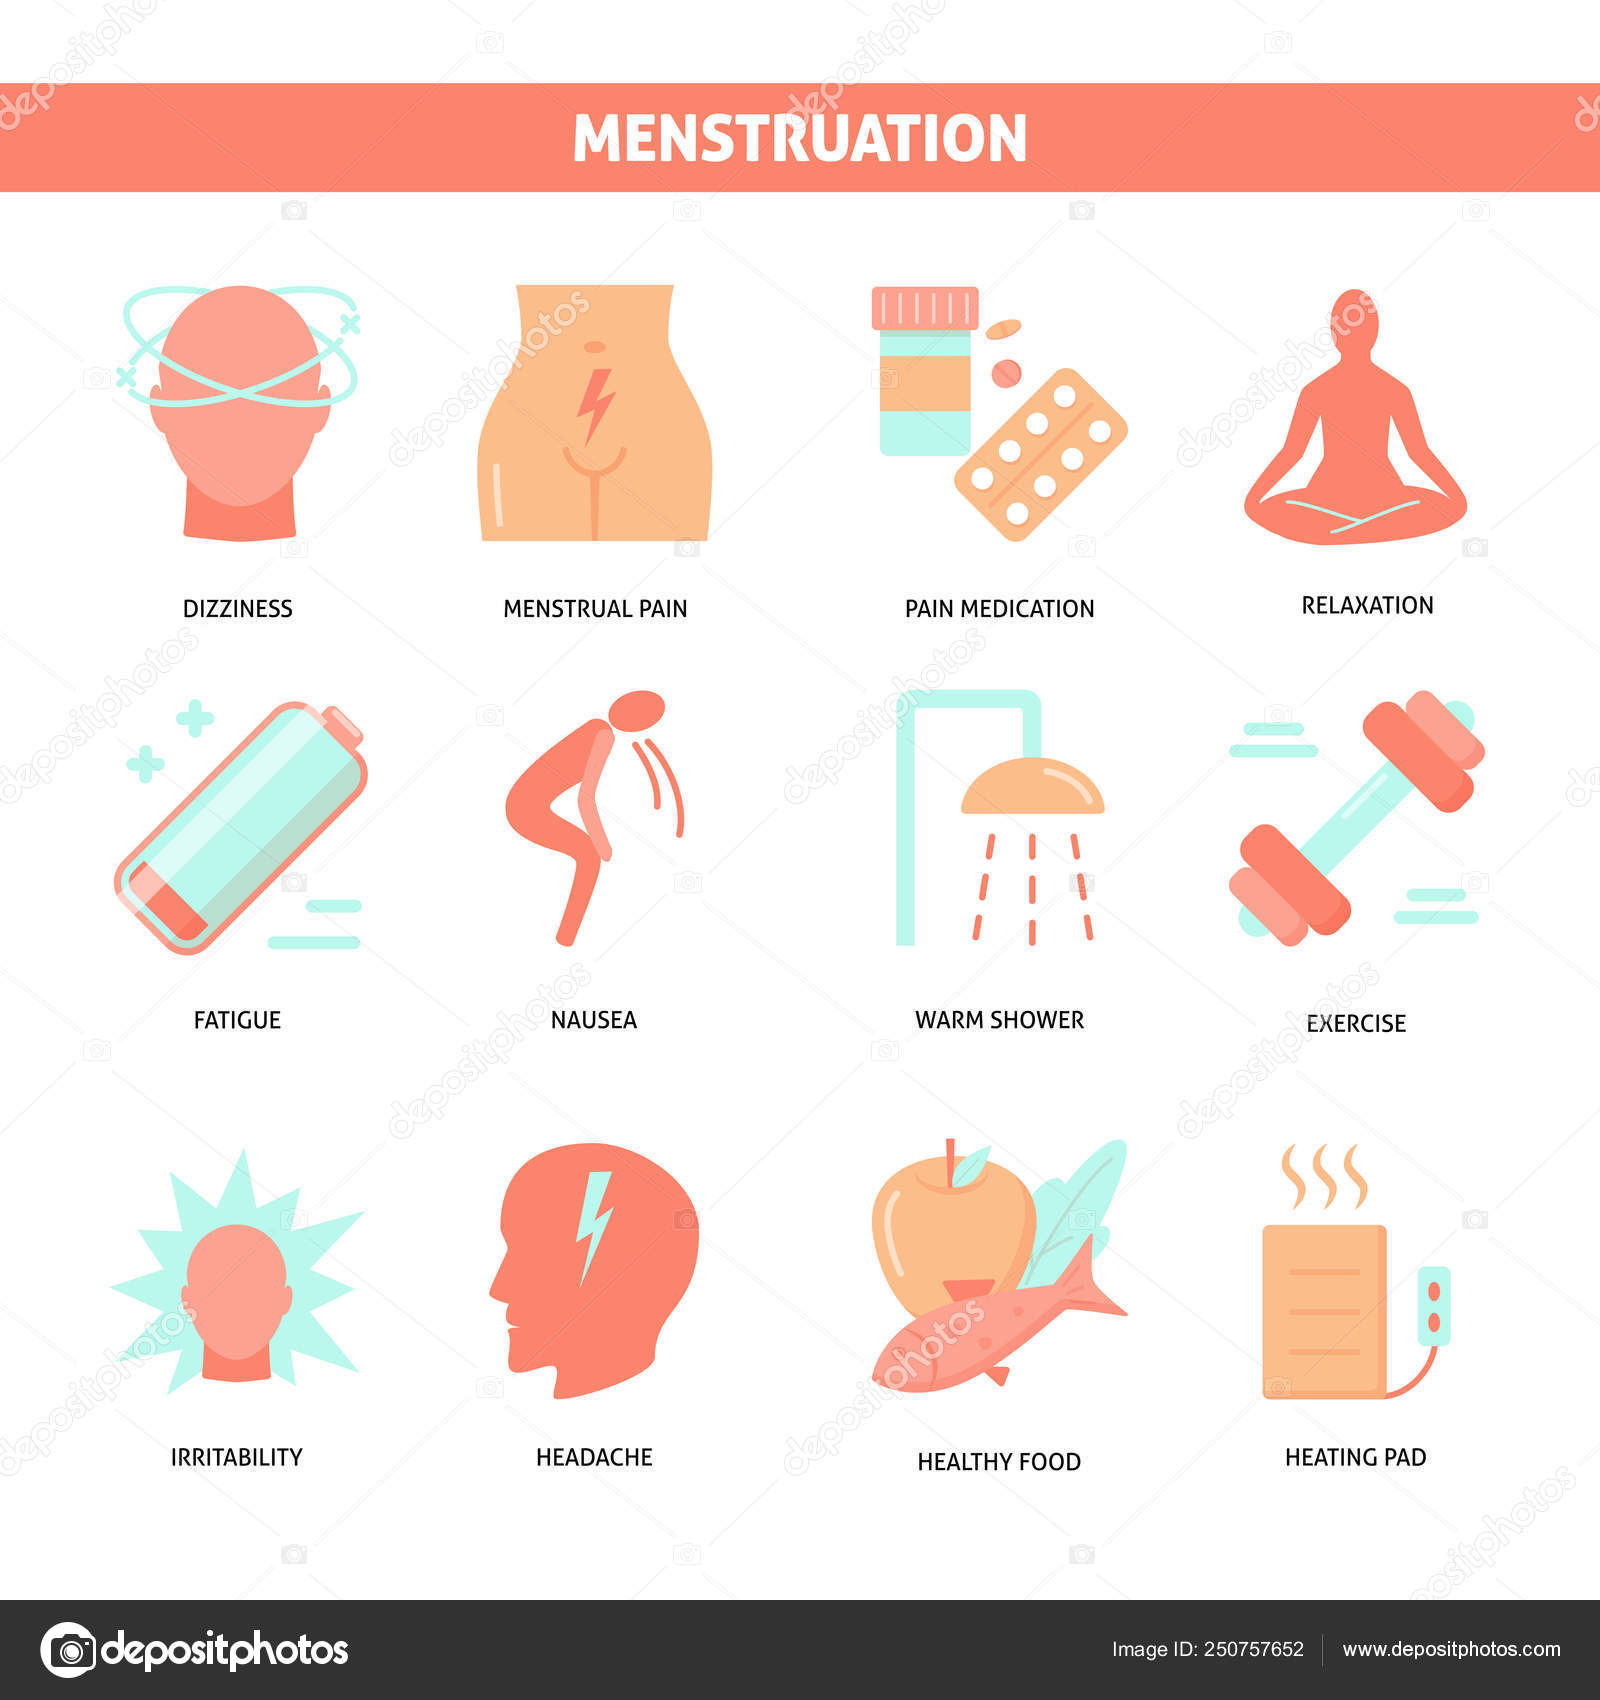 Во время месячных очень сильно болит живот. Менструационная боль. Симптомы месячных. Болит живот при месячг. Симптомы при менструации.